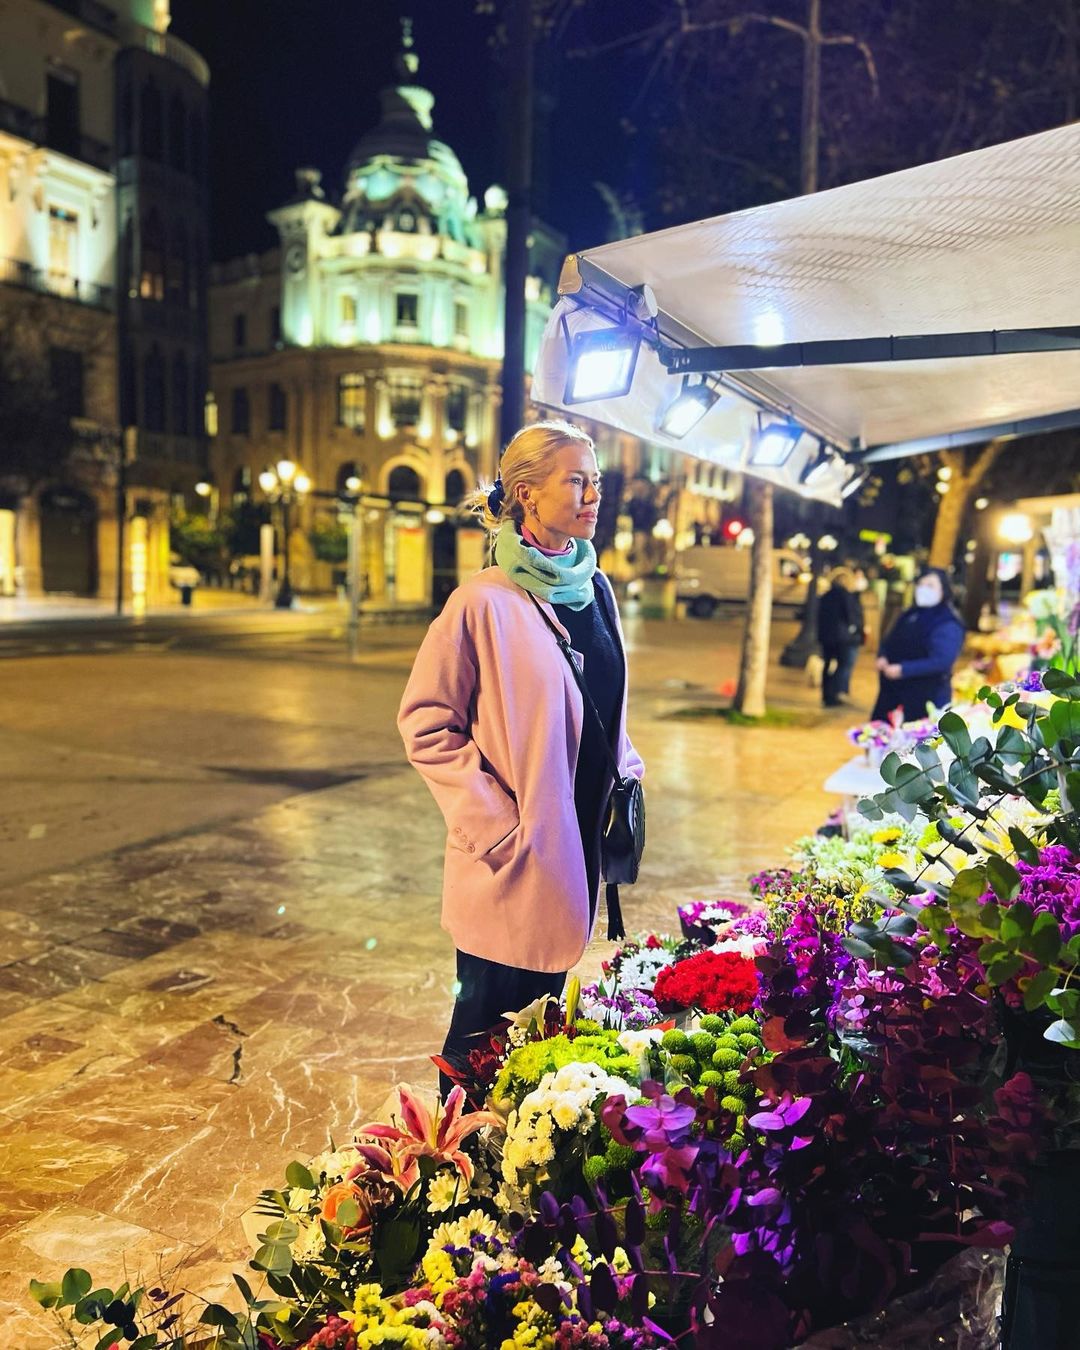 Nicole con la noche valenciana de fondo (Instagram)